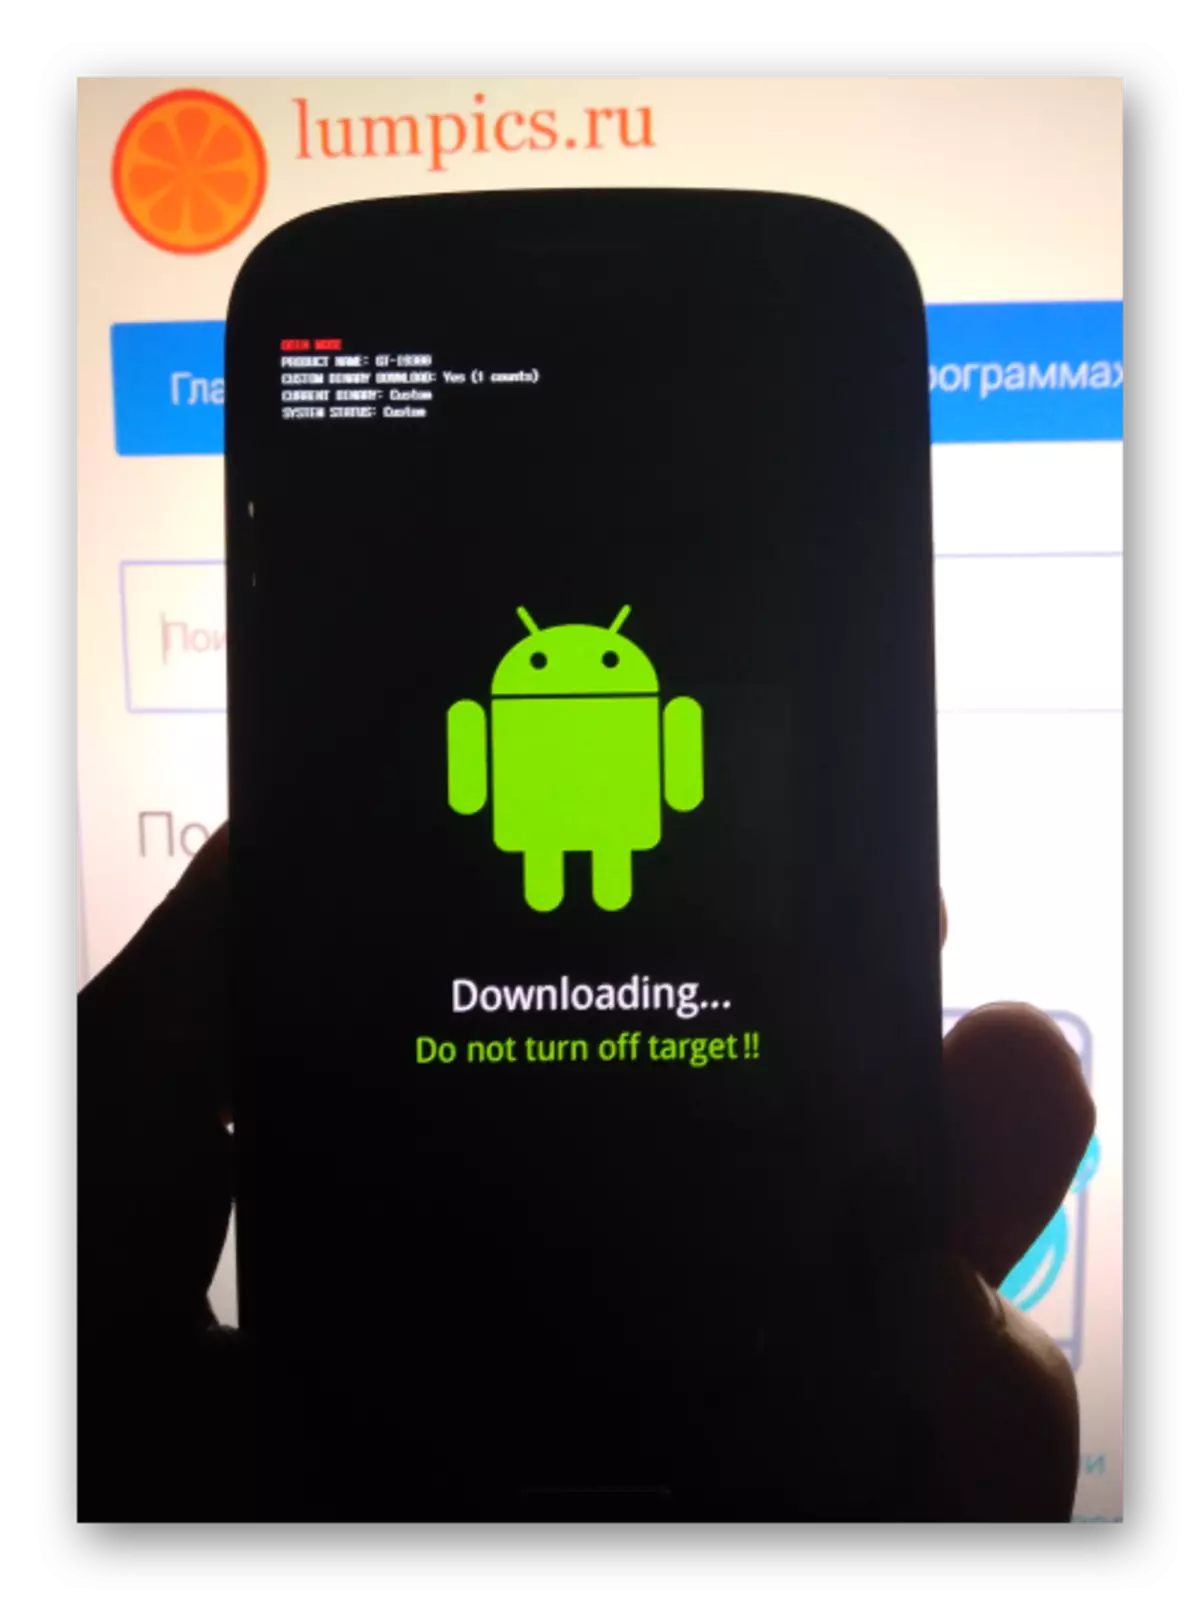 Samsung GT-I9300 Galaxy S III smartphone ditarjamahkeun kana modeu download